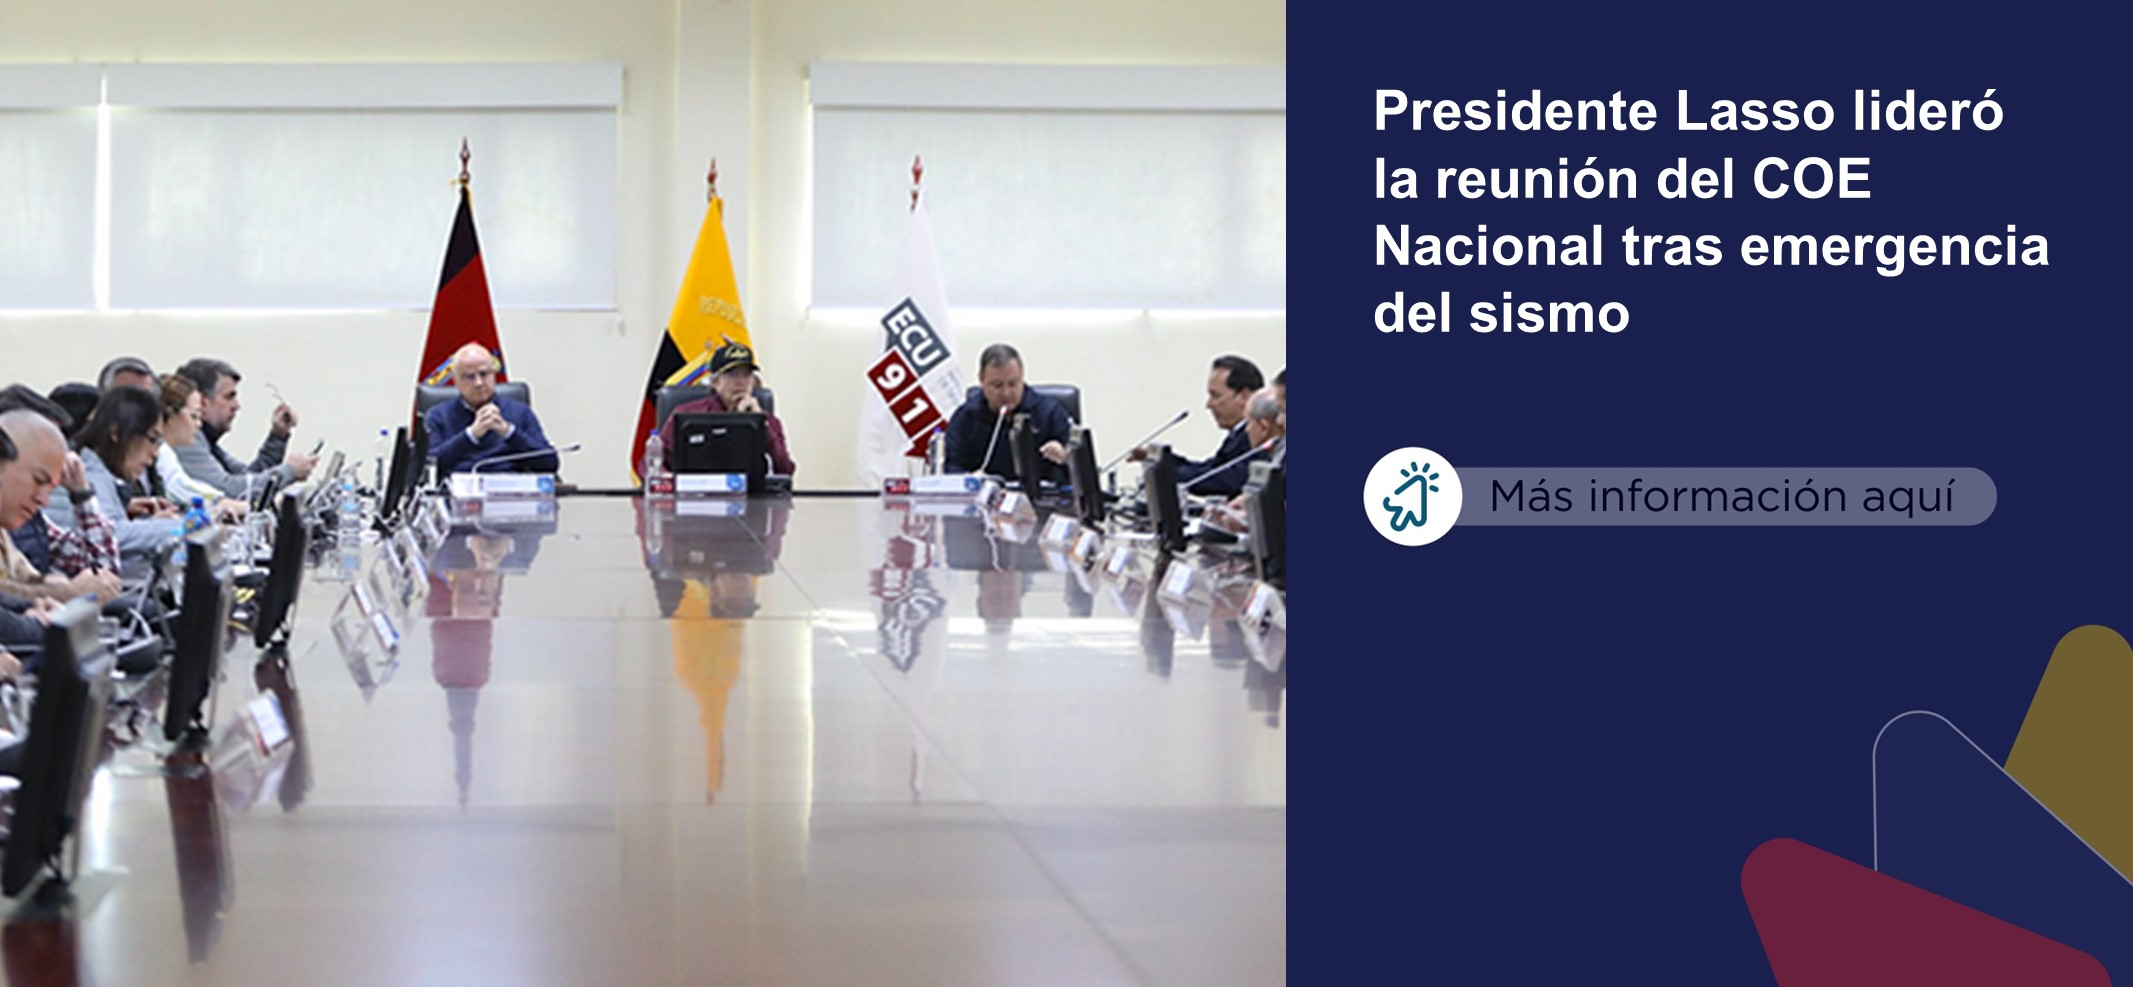 El presidente de la República, Guillermo Lasso, lideró el COE Nacional, donde se evalúan todas las acciones, atenciones y procedimientos ejecutados tras la emergencia por el sismo